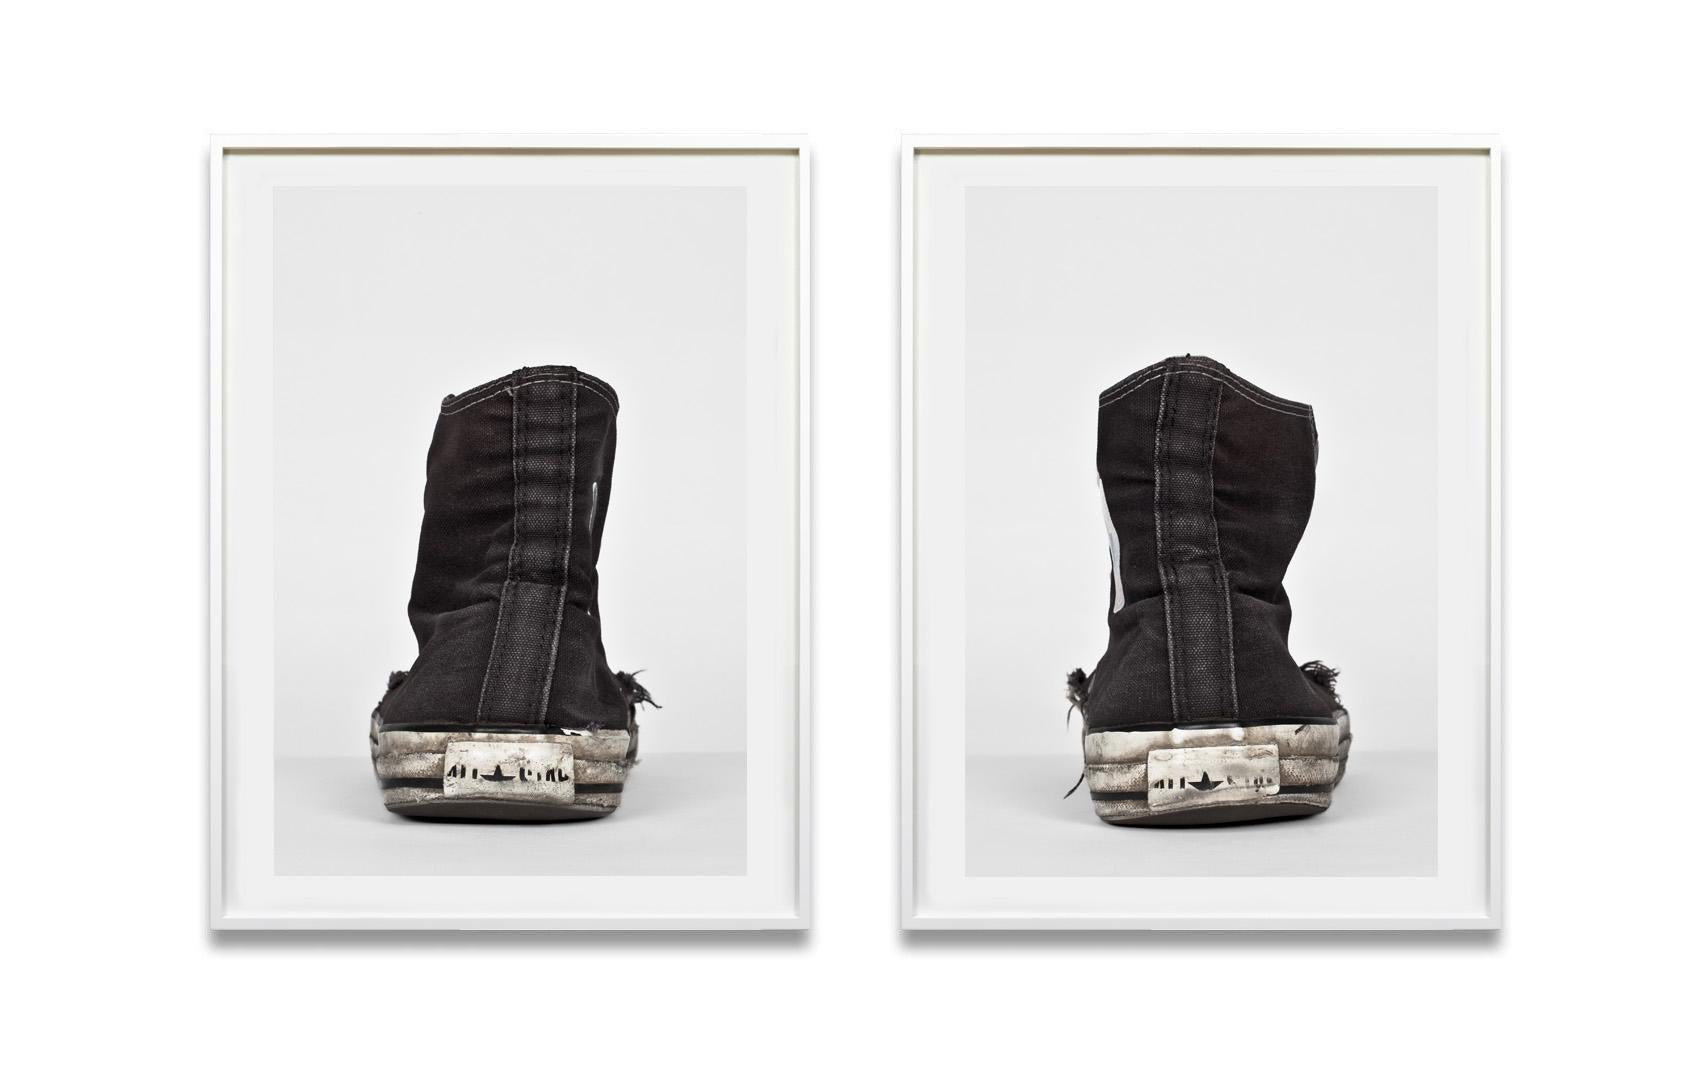 Converse, Hauts noirs de haute couture - Michael Schachtner, photographie contemporaine, mode